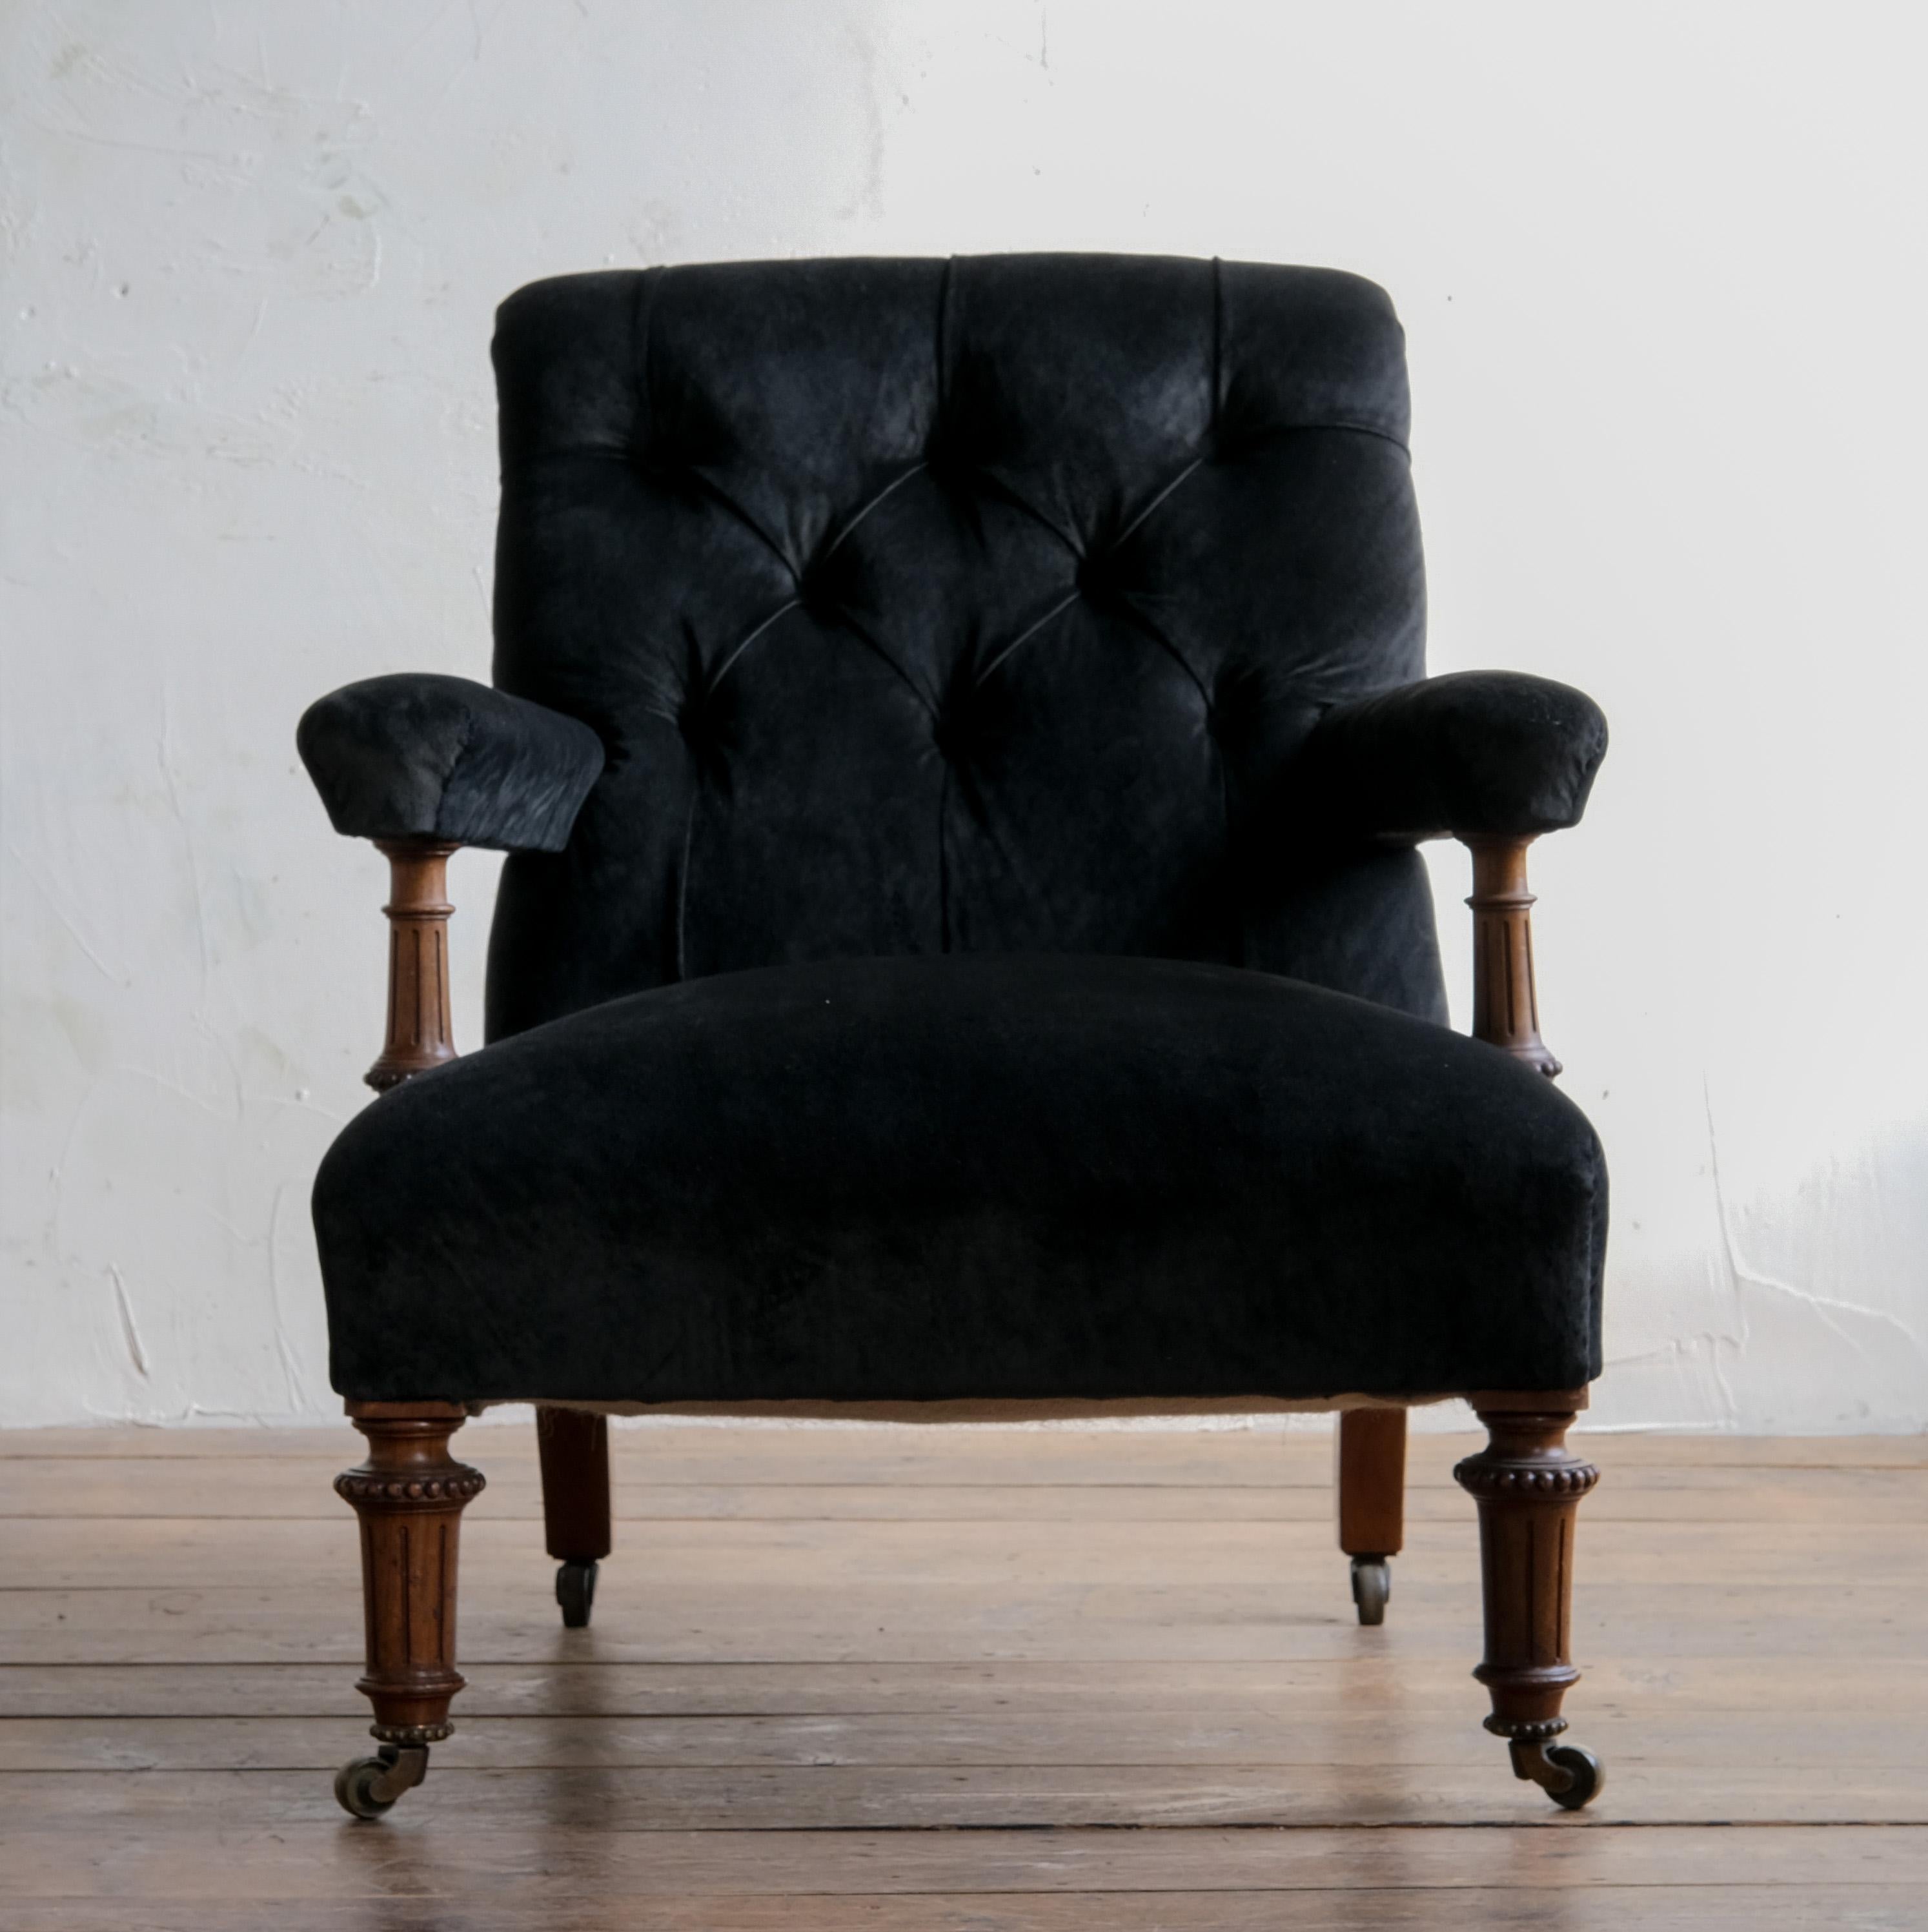 Superbe fauteuil du milieu du 19e siècle de Gillows of Lancaster. Elle repose sur des pieds avant et des supports d'accoudoir en noyer finement travaillés, sans pieds chanfreinés évasés à l'arrière, le tout reposant sur les solides roulettes en